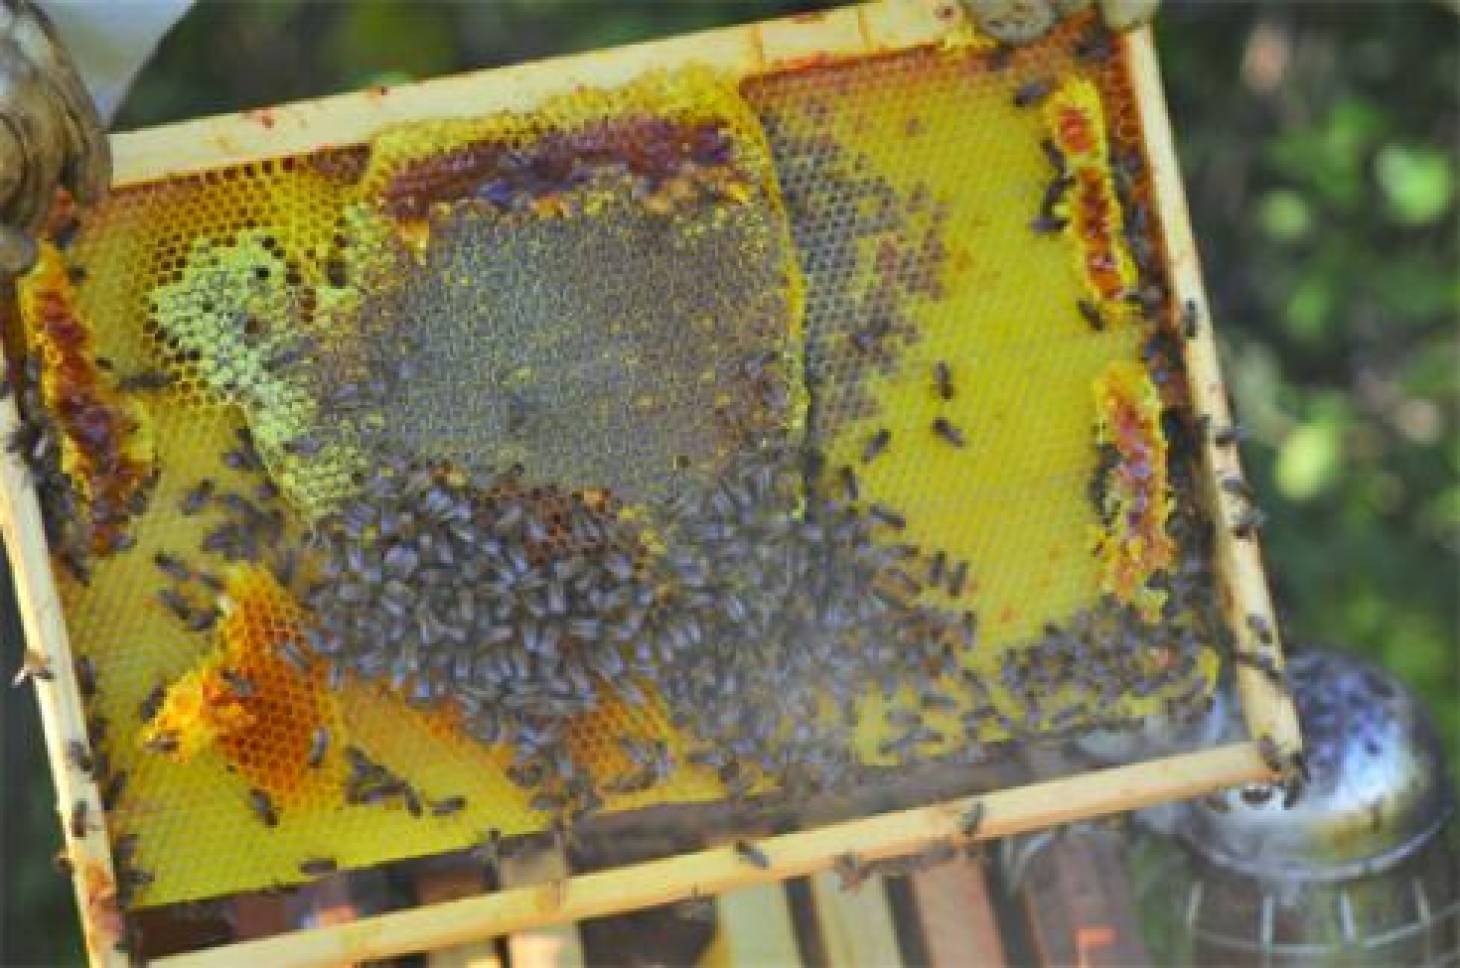 La propolis au secours de la filière apicole